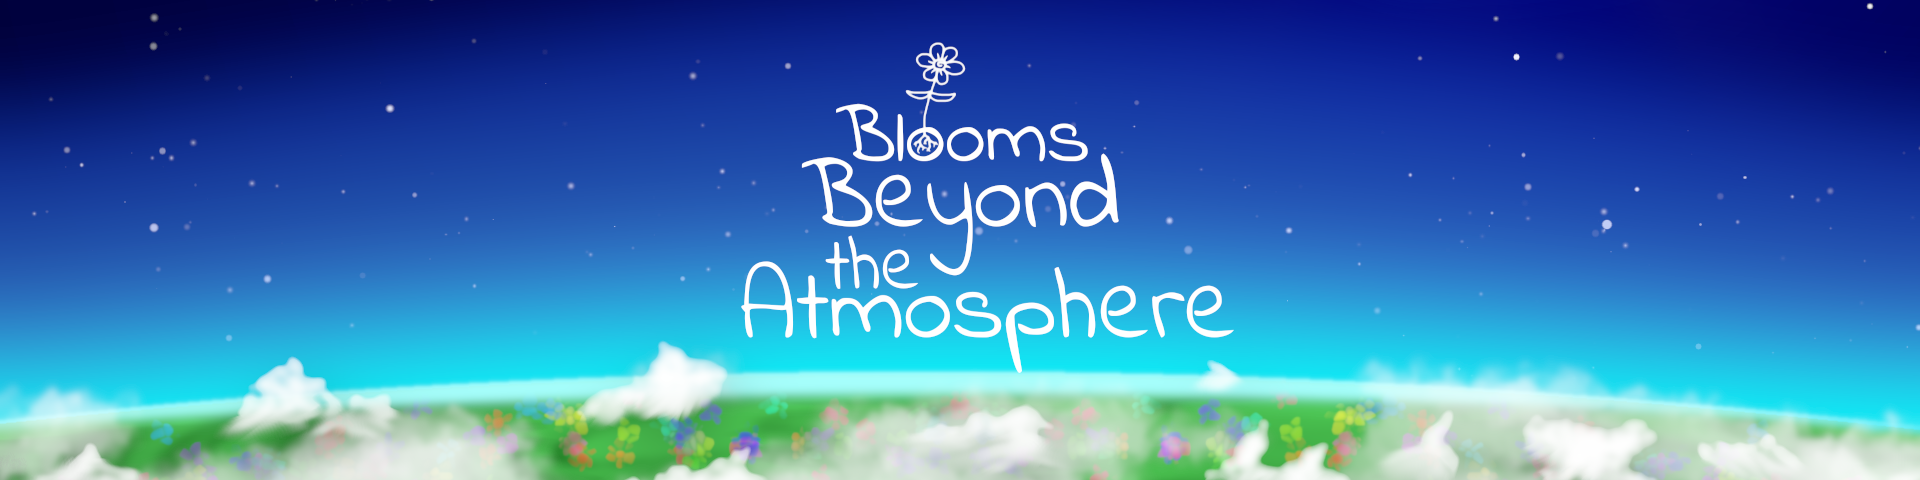 Blooms Beyond the Atmosphere